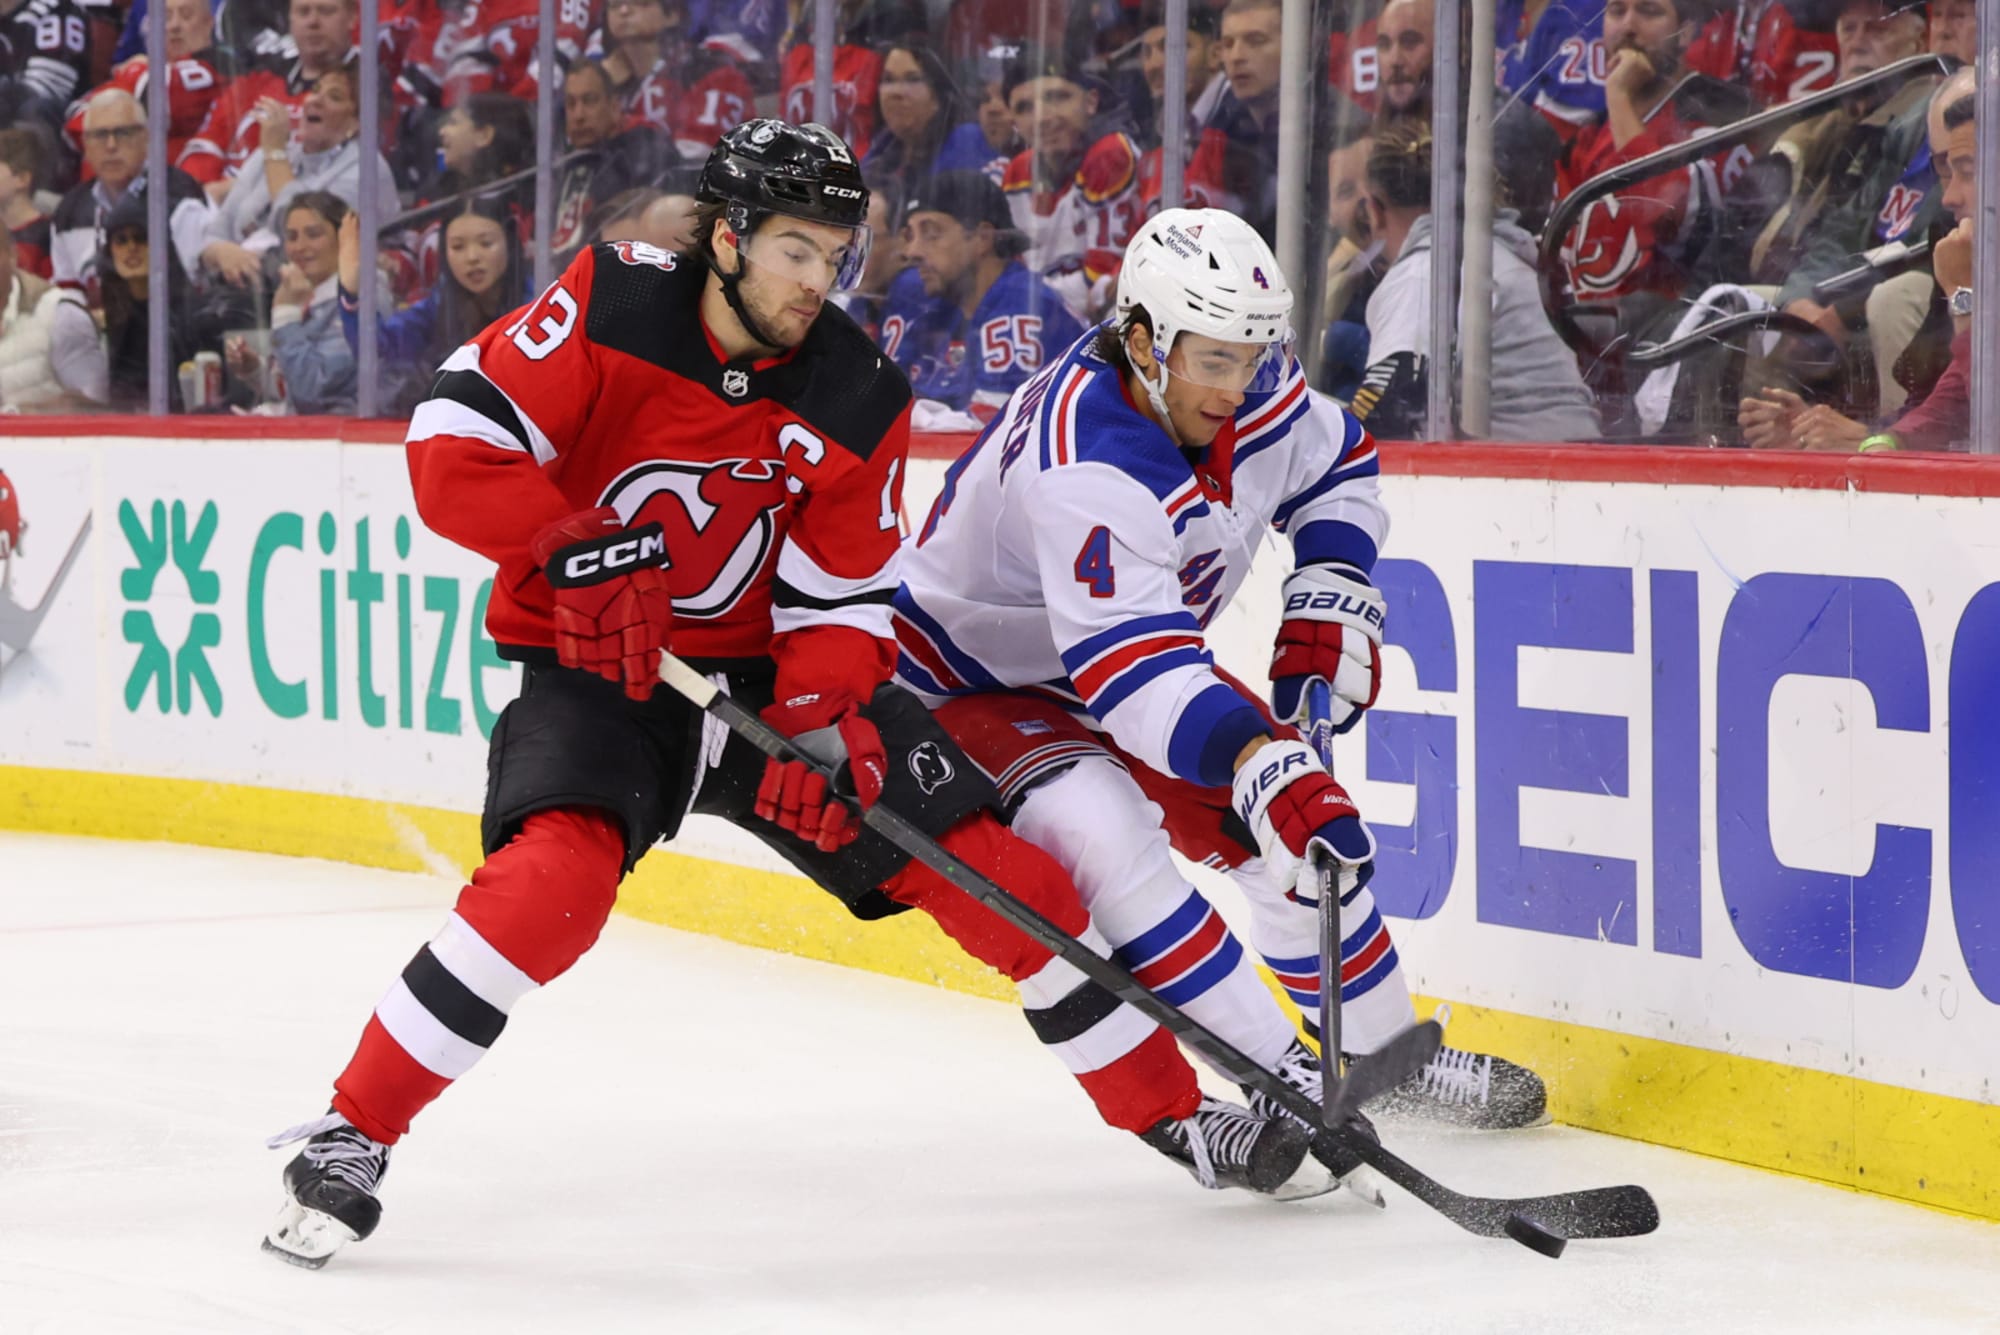 Devils vs. Rangers Prediction & Picks - NHL Playoffs First Round Game 1